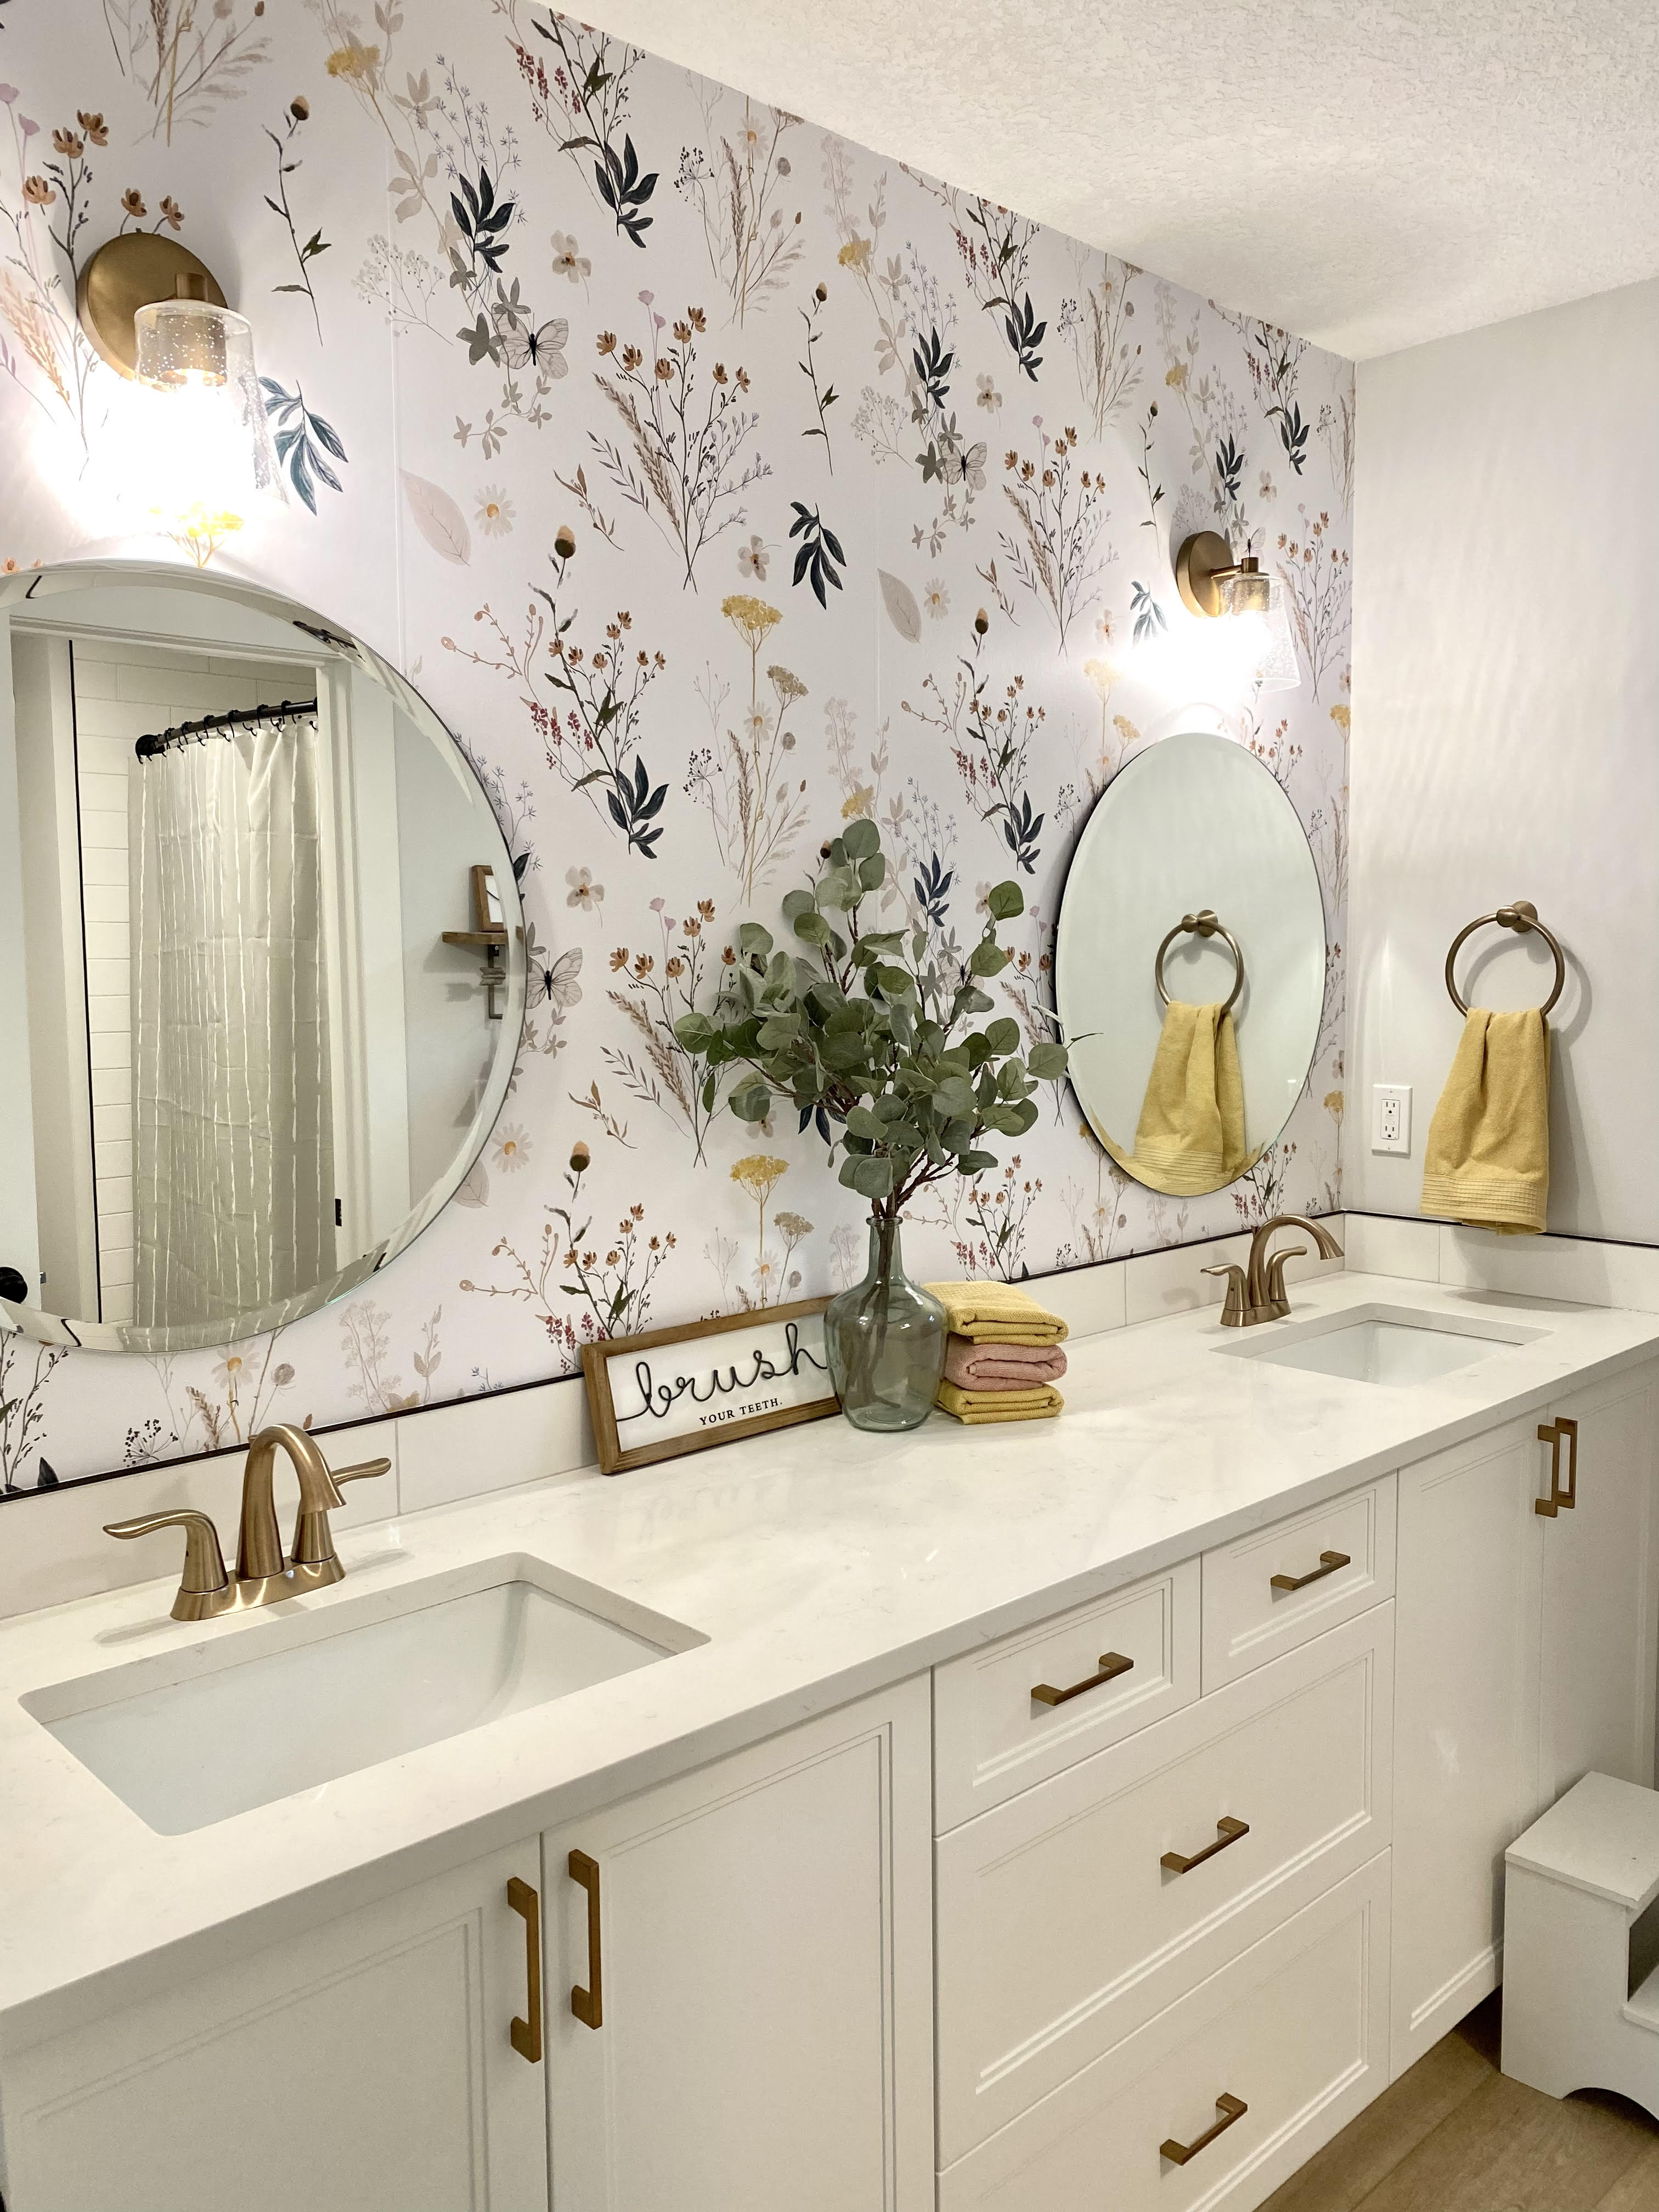 wallpaper, peel and stick wallpaper, Home decor, floral wallpaper, Aerie floral wallpaper, Multicolor wallpaper, bathroom wallpaper